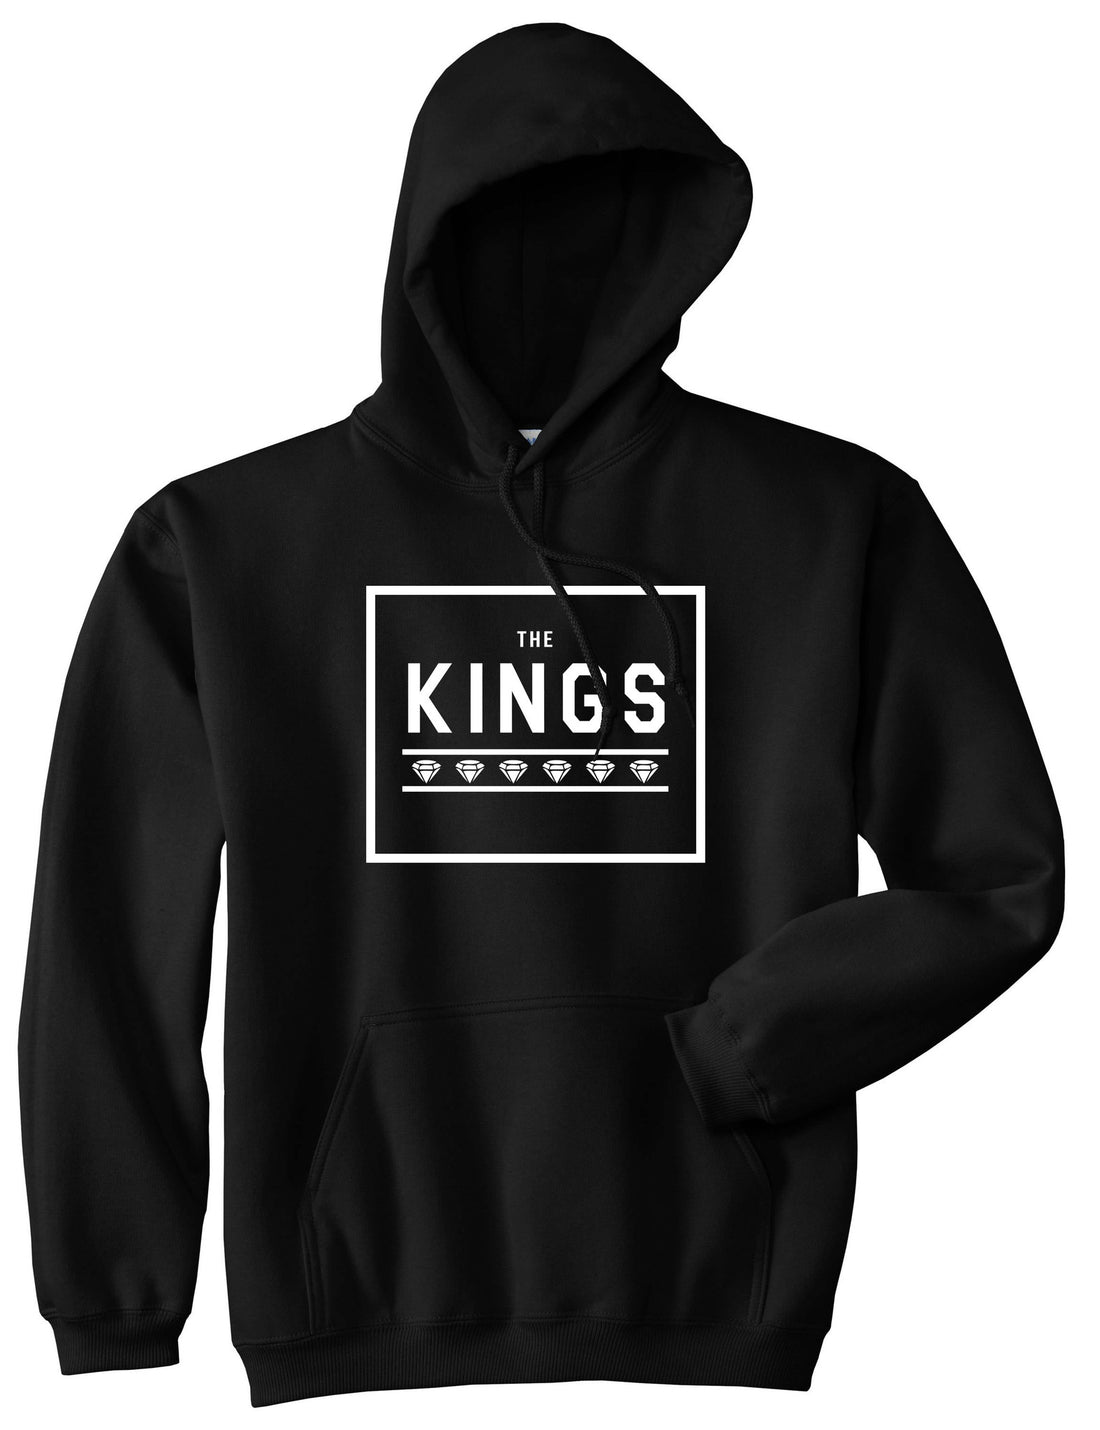 The Kings Diamonds Boys Kids Pullover Hoodie Hoody in Black by Kings Of NY